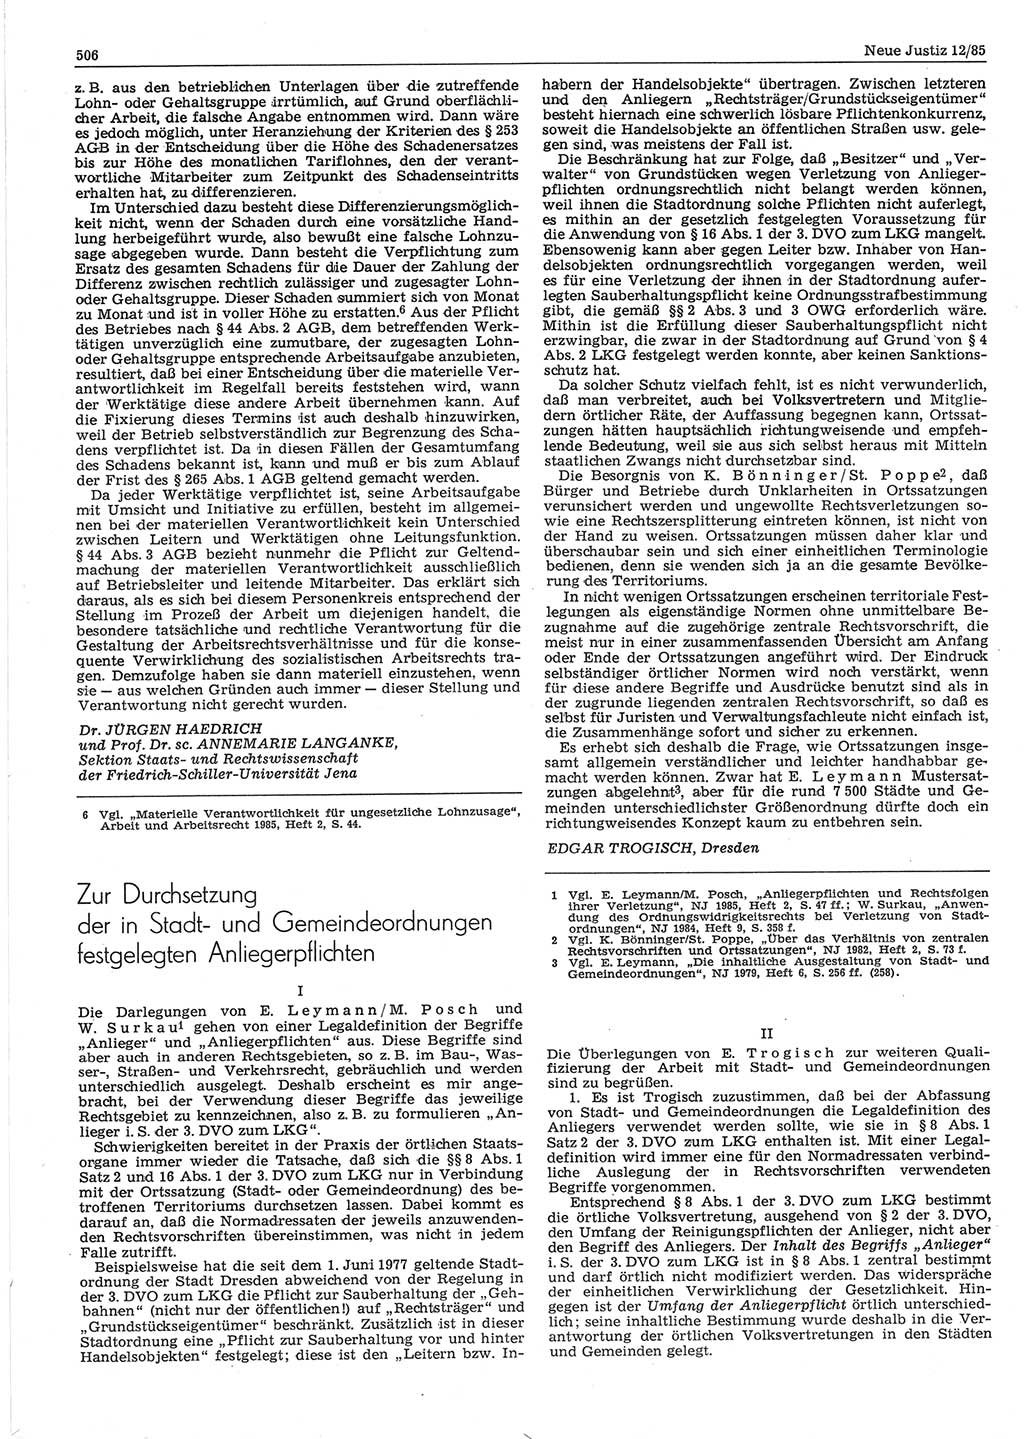 Neue Justiz (NJ), Zeitschrift für sozialistisches Recht und Gesetzlichkeit [Deutsche Demokratische Republik (DDR)], 39. Jahrgang 1985, Seite 506 (NJ DDR 1985, S. 506)